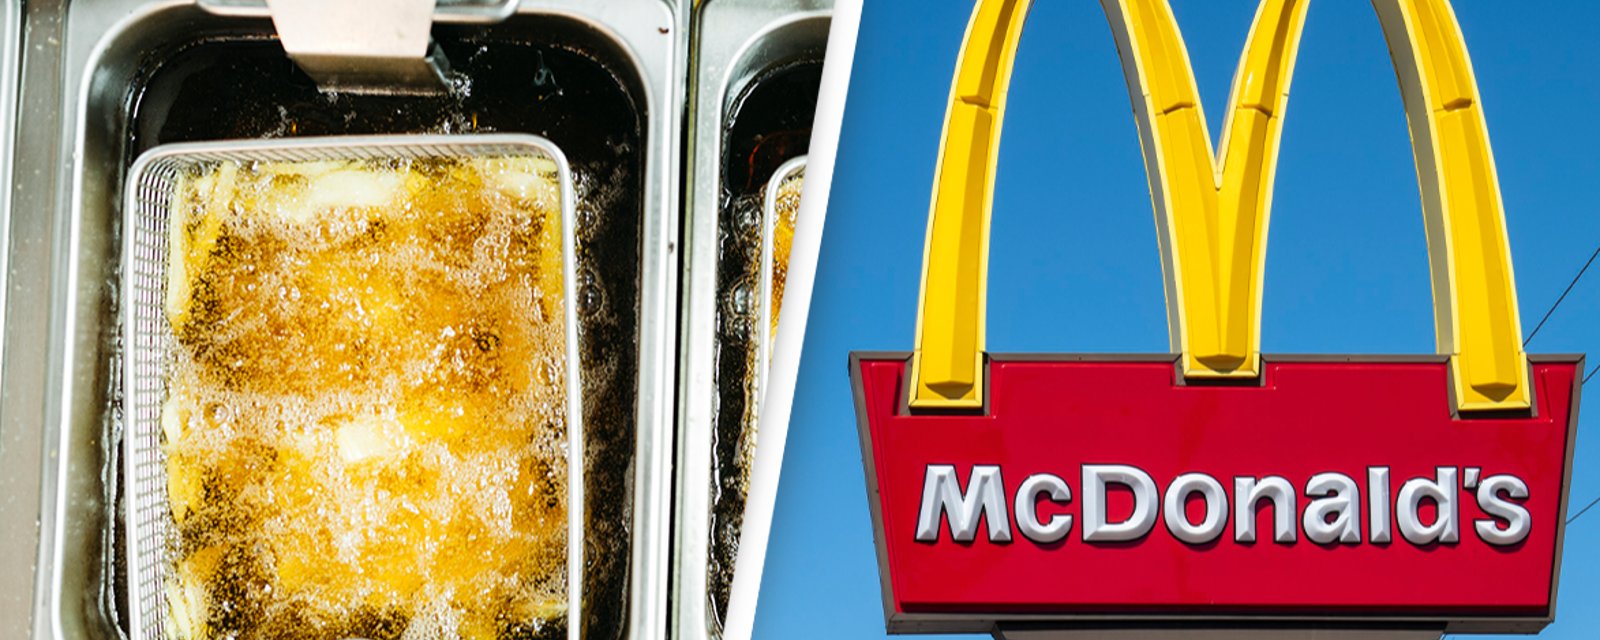 Un pasteur en furie tente de mettre la tête d'un employé chez McDonald's dans une friteuse 